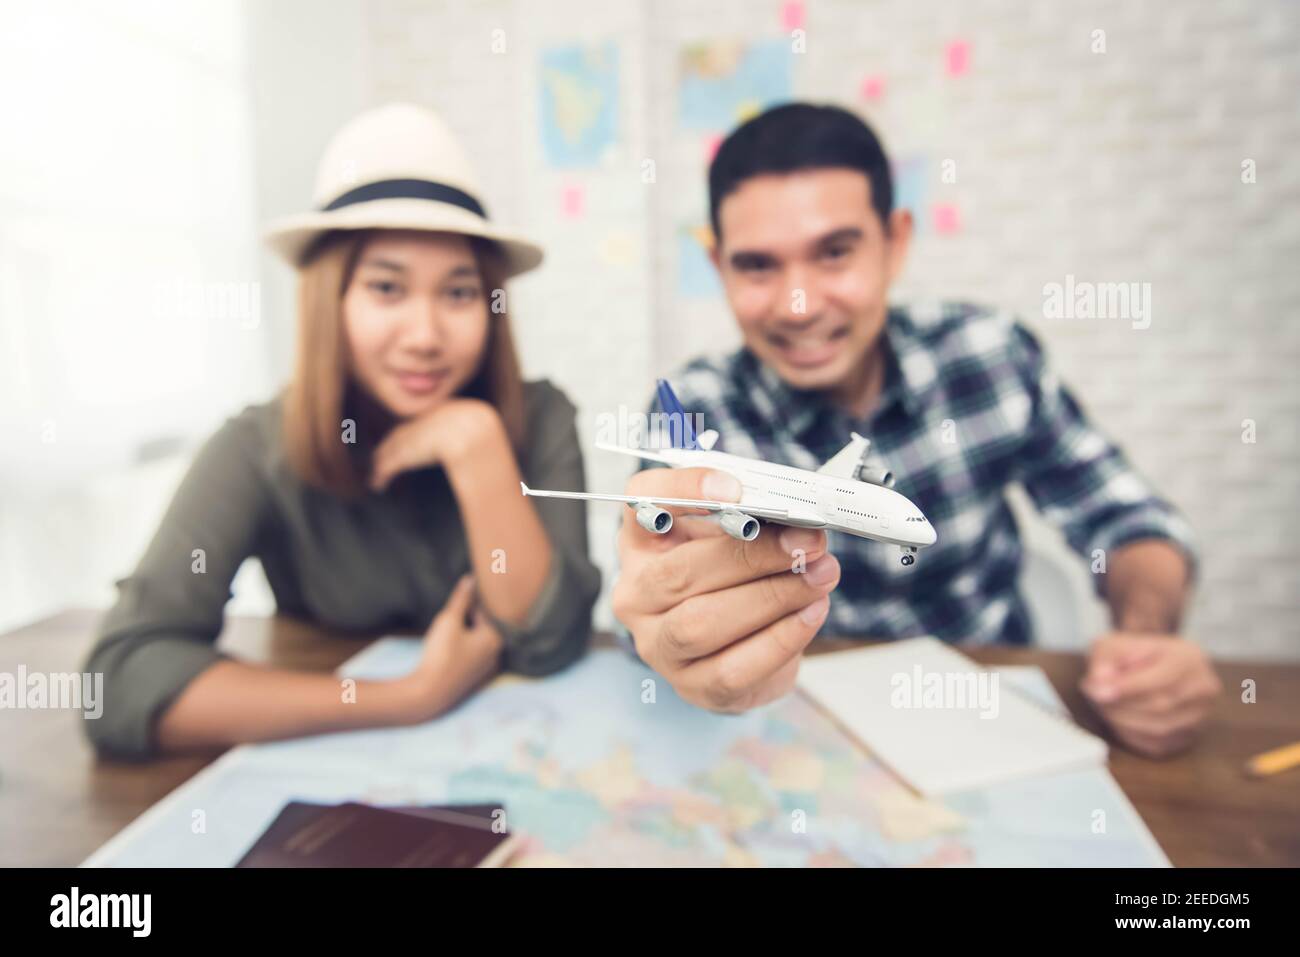 Coppia asiatica che piangono il loro viaggio di vacanza usando la mappa e giocando con un aereo giocattolo modello, ottenendo eccitato circa il loro viaggio Foto Stock